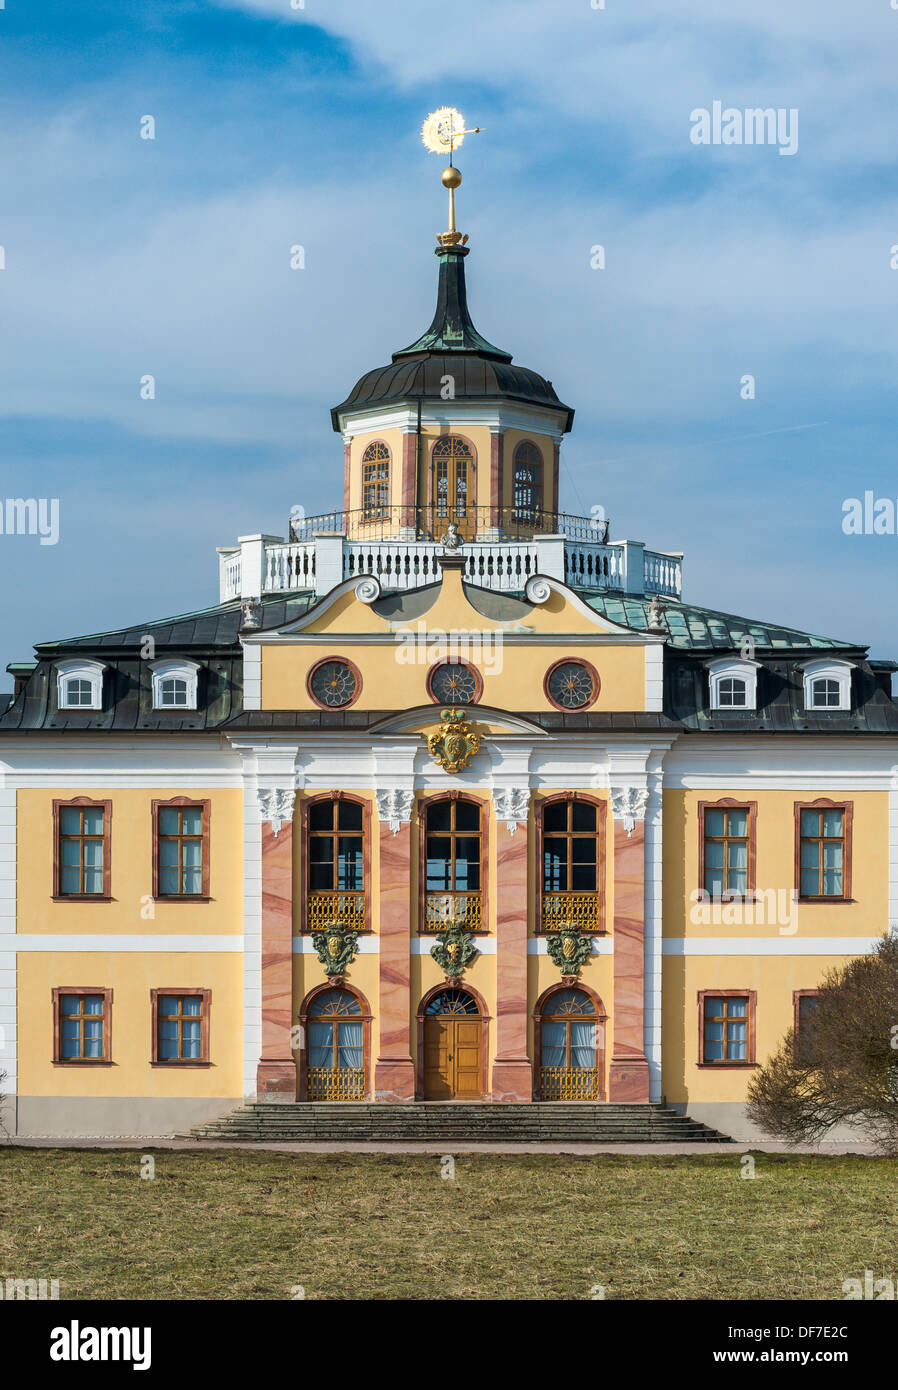 Schloss Belvedere Palace, dichiarato patrimonio culturale mondiale dall'UNESCO, sezione mediana, Weimar, Turingia, Germania Foto Stock